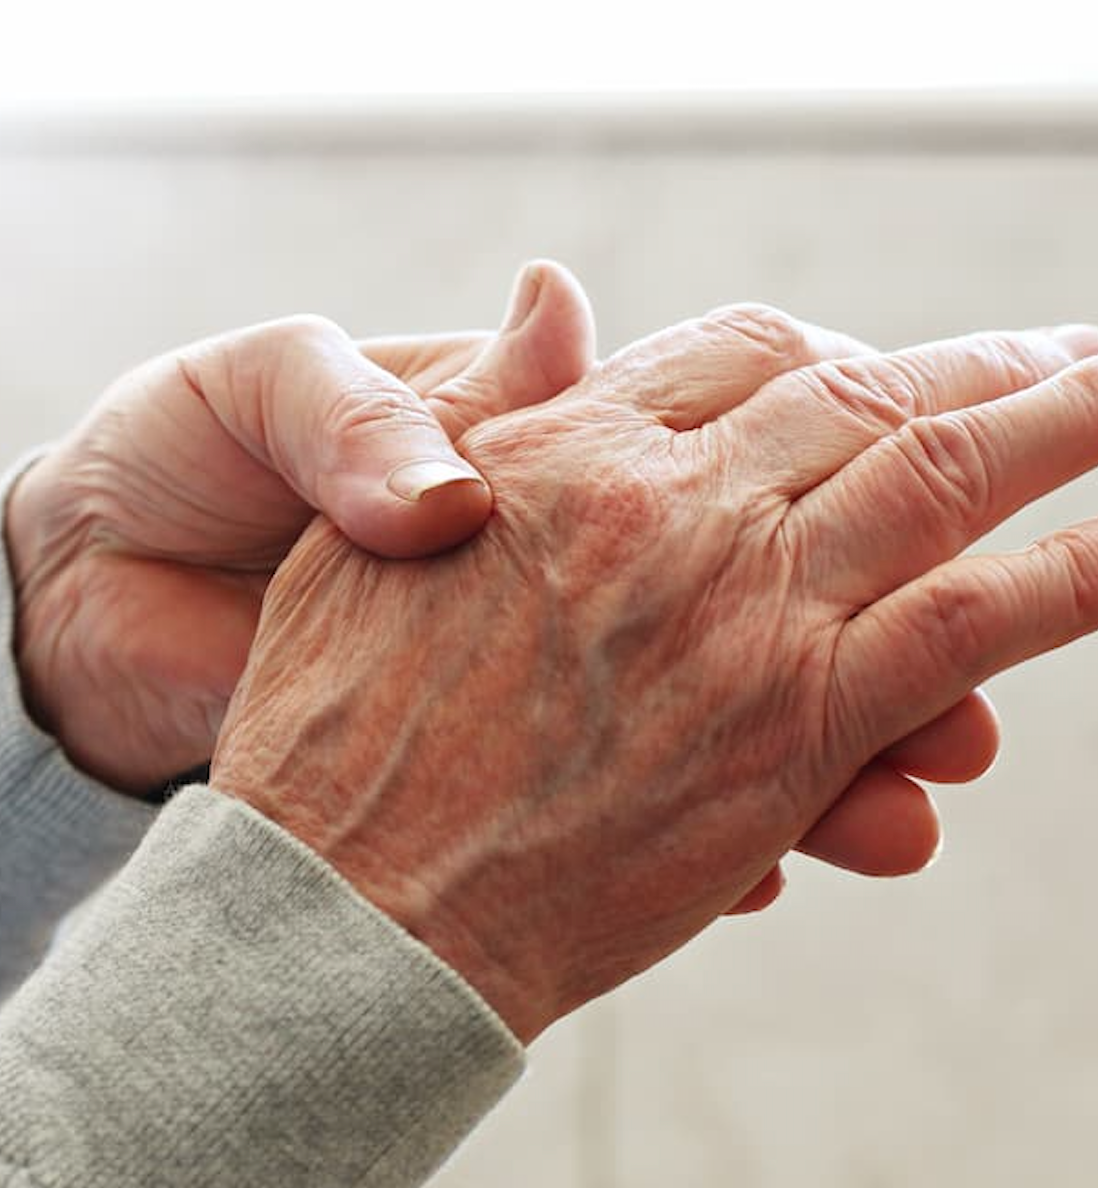 DAS28-ESR Scores Higher in Female Patients With Rheumatoid Arthritis in Remission